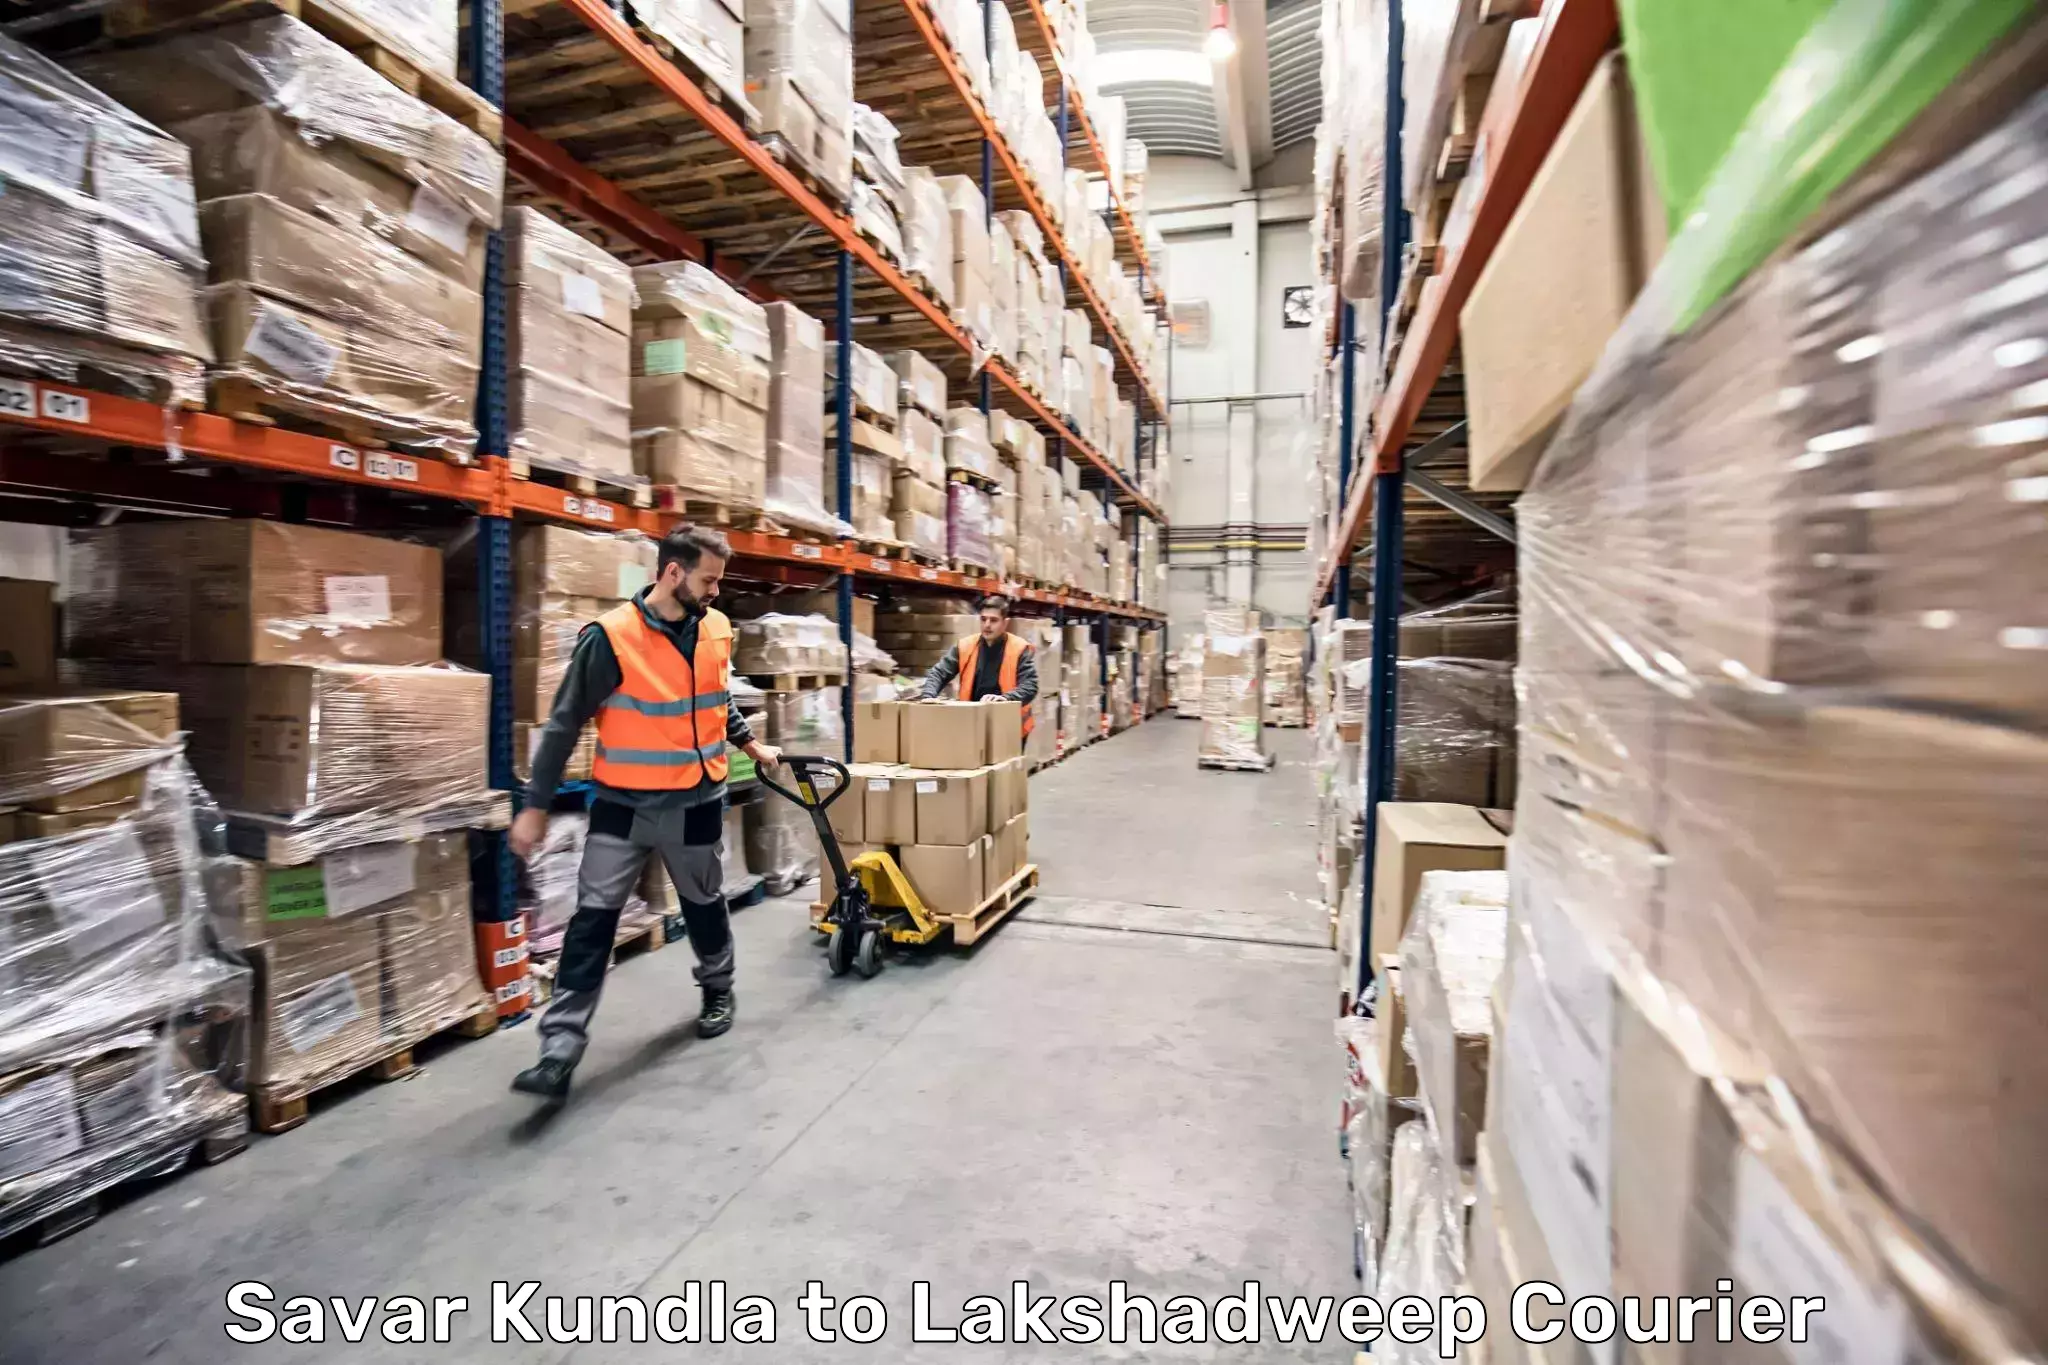 Luggage shipping specialists Savar Kundla to Lakshadweep